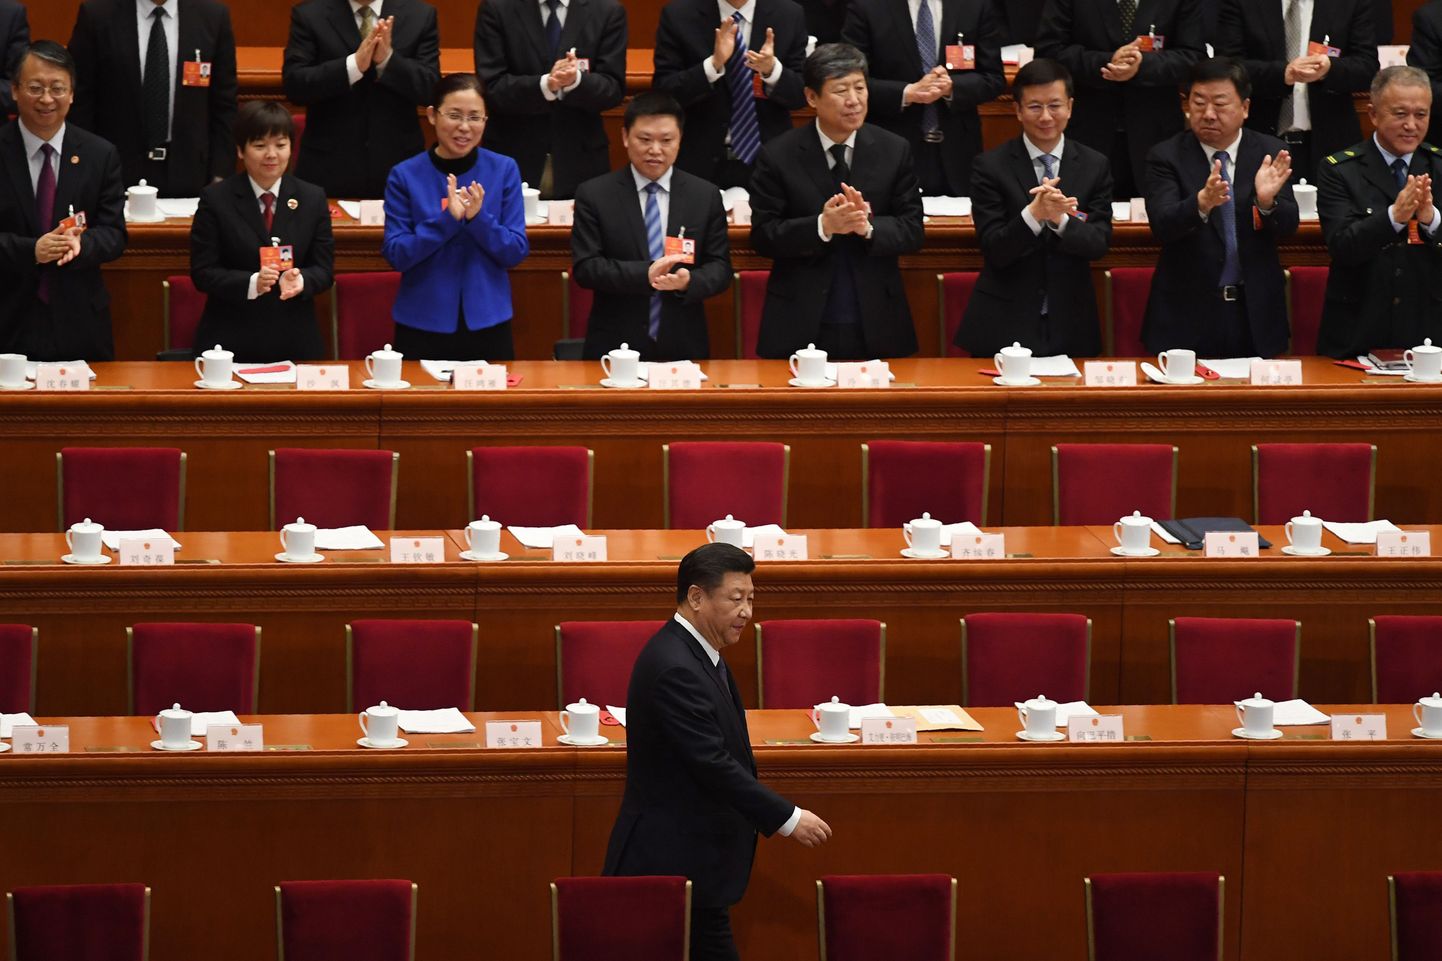 President Xi Jinping saabumas Hiina rahvakongressi ette.